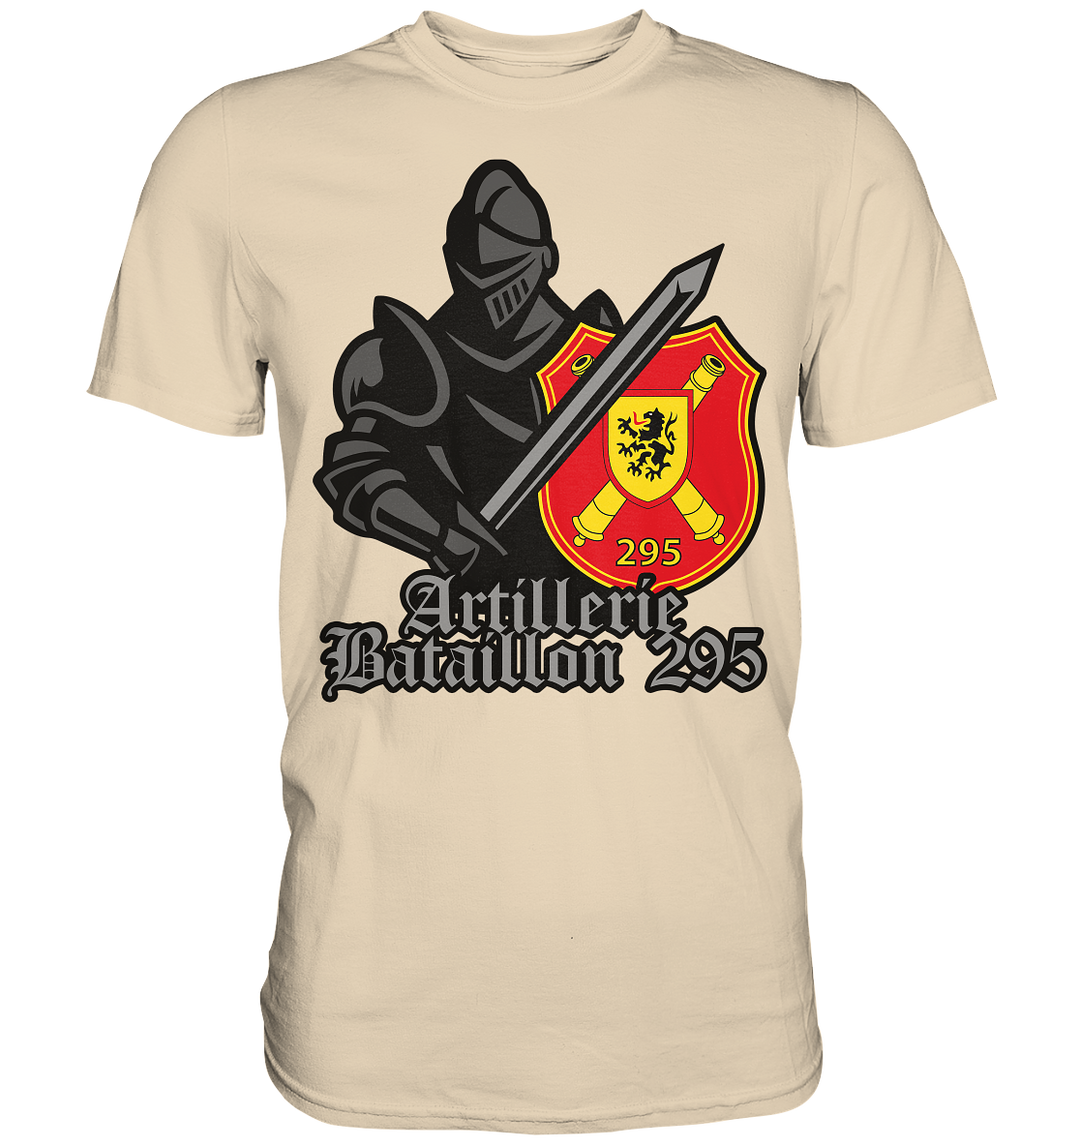 "ArtBtl 295 - Ritter" - Premium Shirt